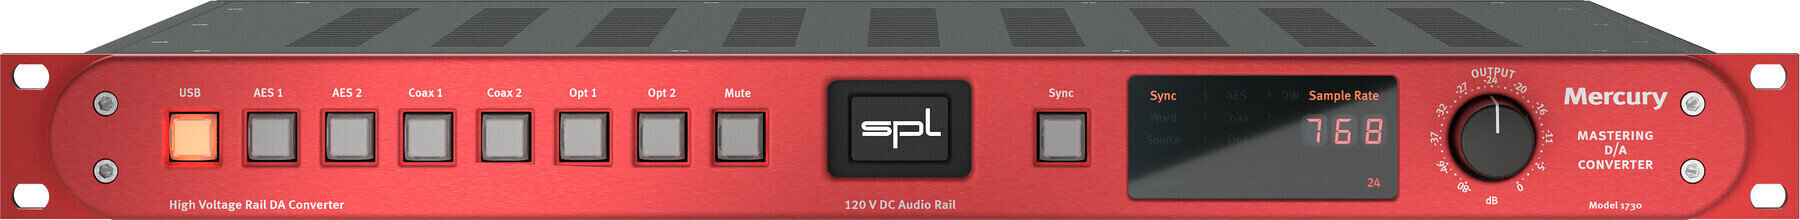 Digital audio converter SPL Mercury